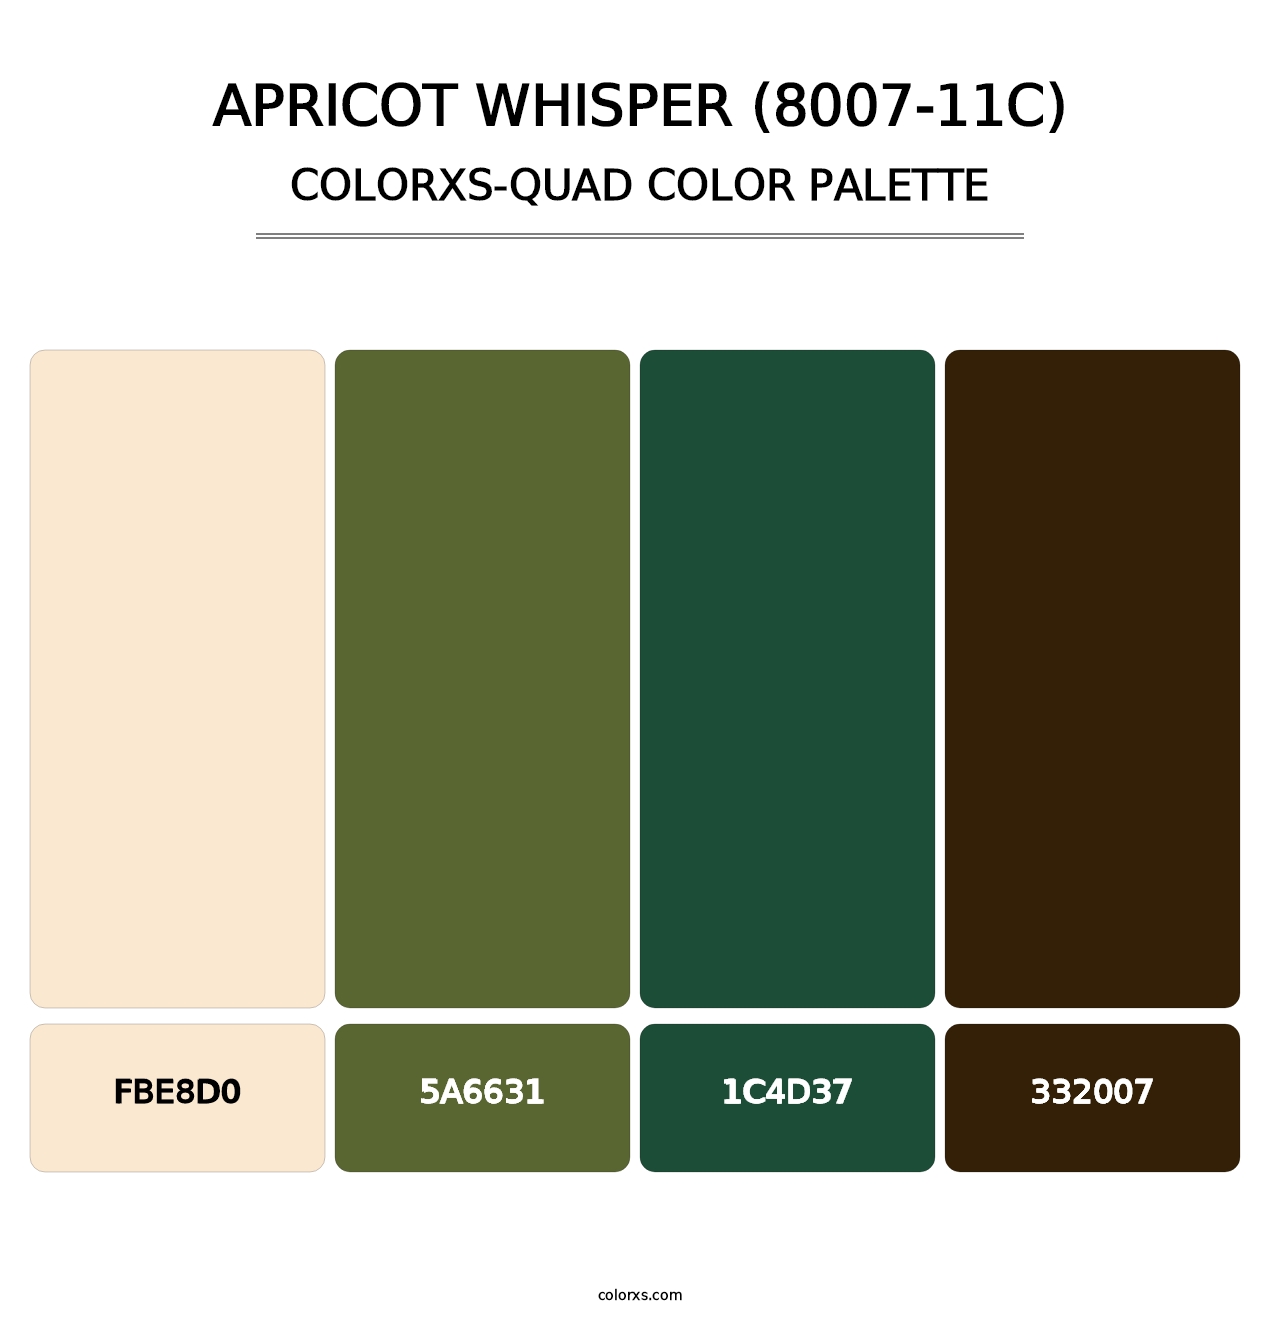 Apricot Whisper (8007-11C) - Colorxs Quad Palette